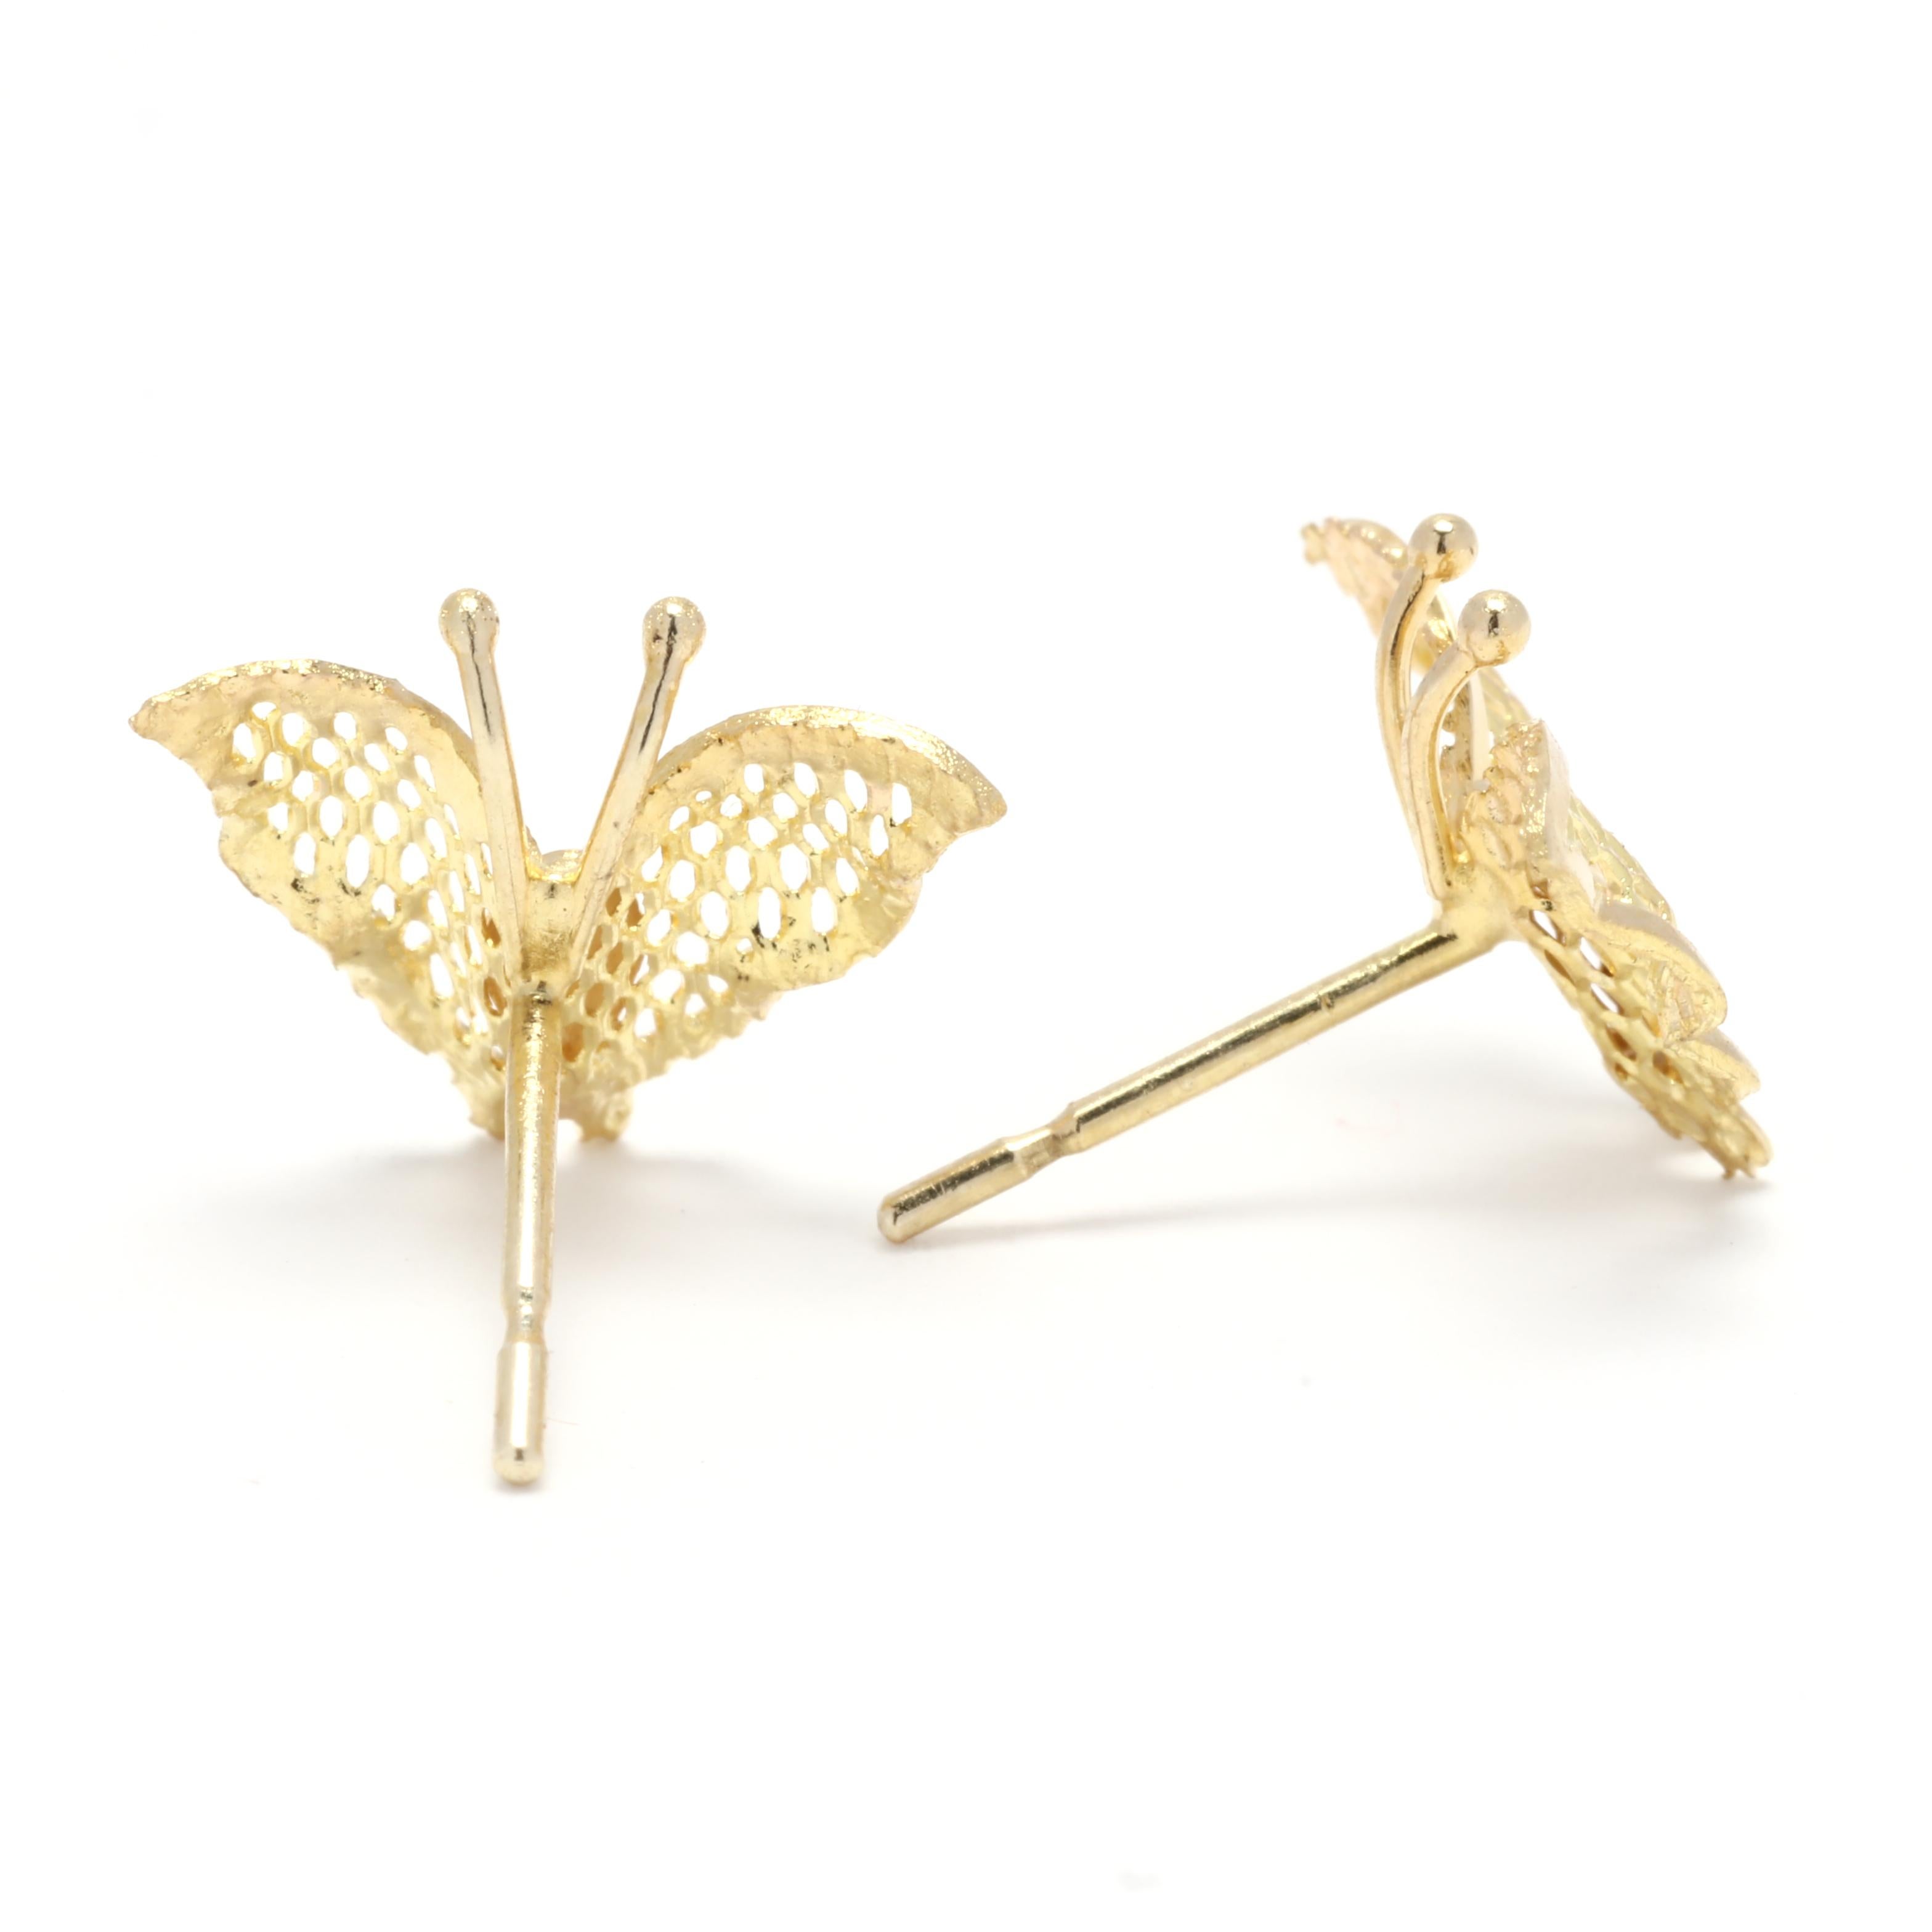 Ajoutez un charme féminin à votre collection de bijoux avec ces petites boucles d'oreilles papillon en or. Fabriquées en or jaune 14 carats, ces boucles d'oreilles sont réalisées avec précision et souci du détail. Le design simple du papillon ajoute